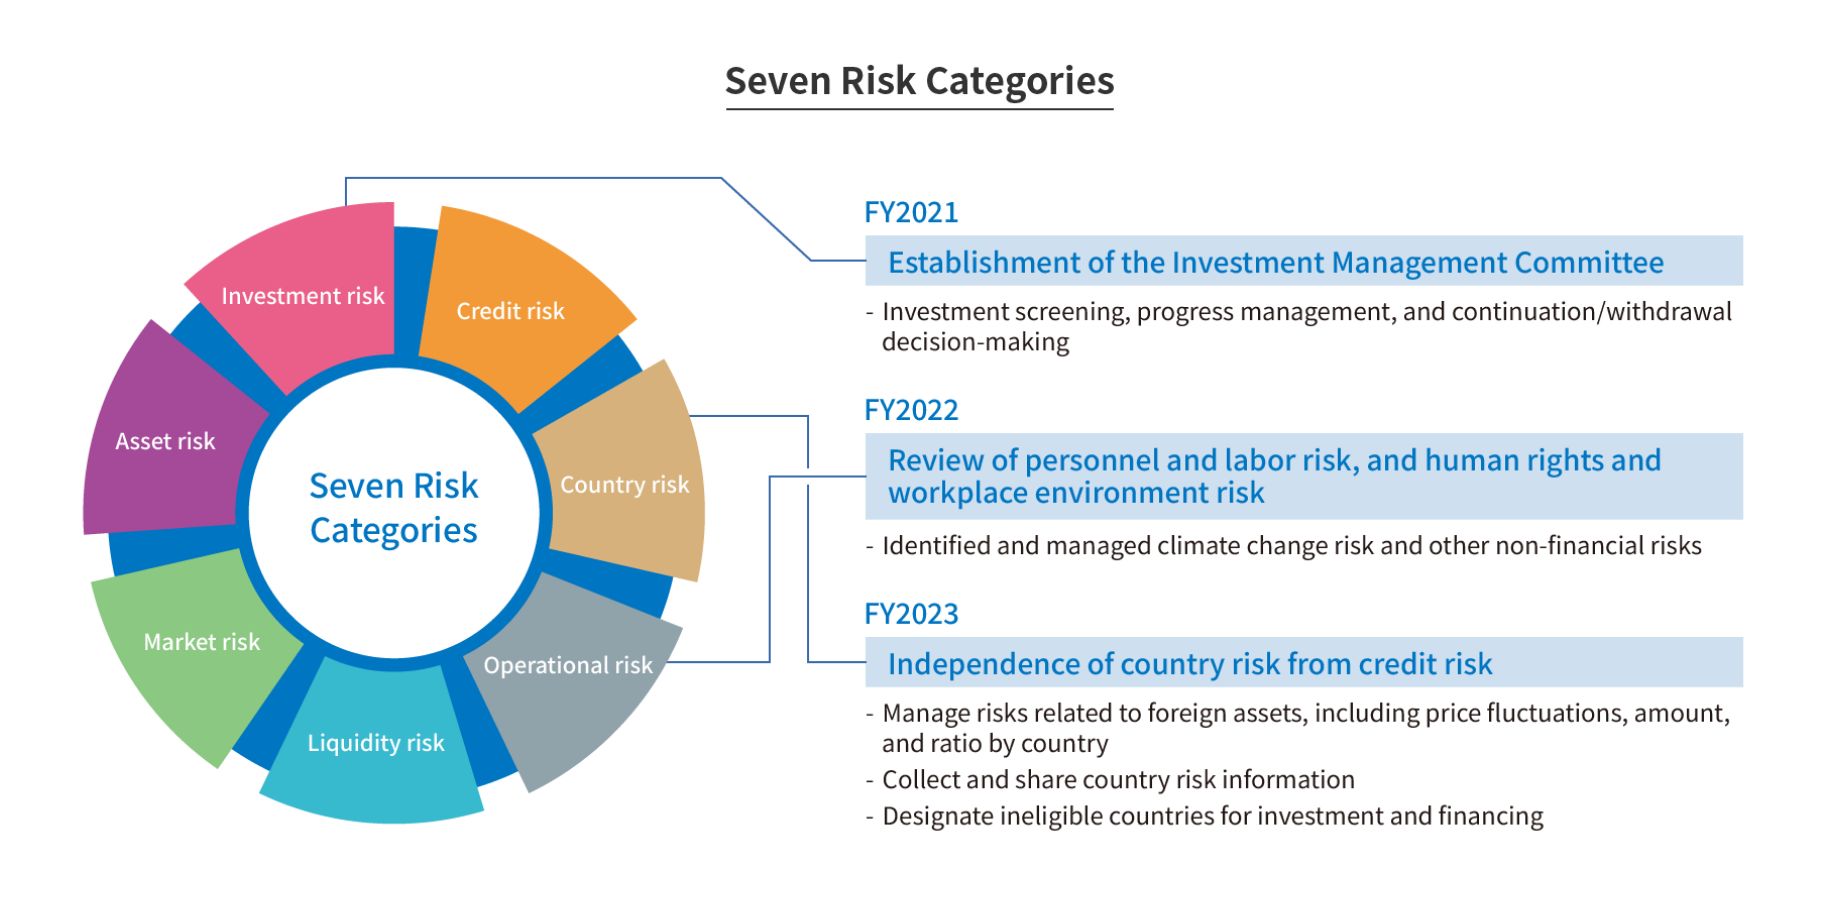 Seven Risk Categories